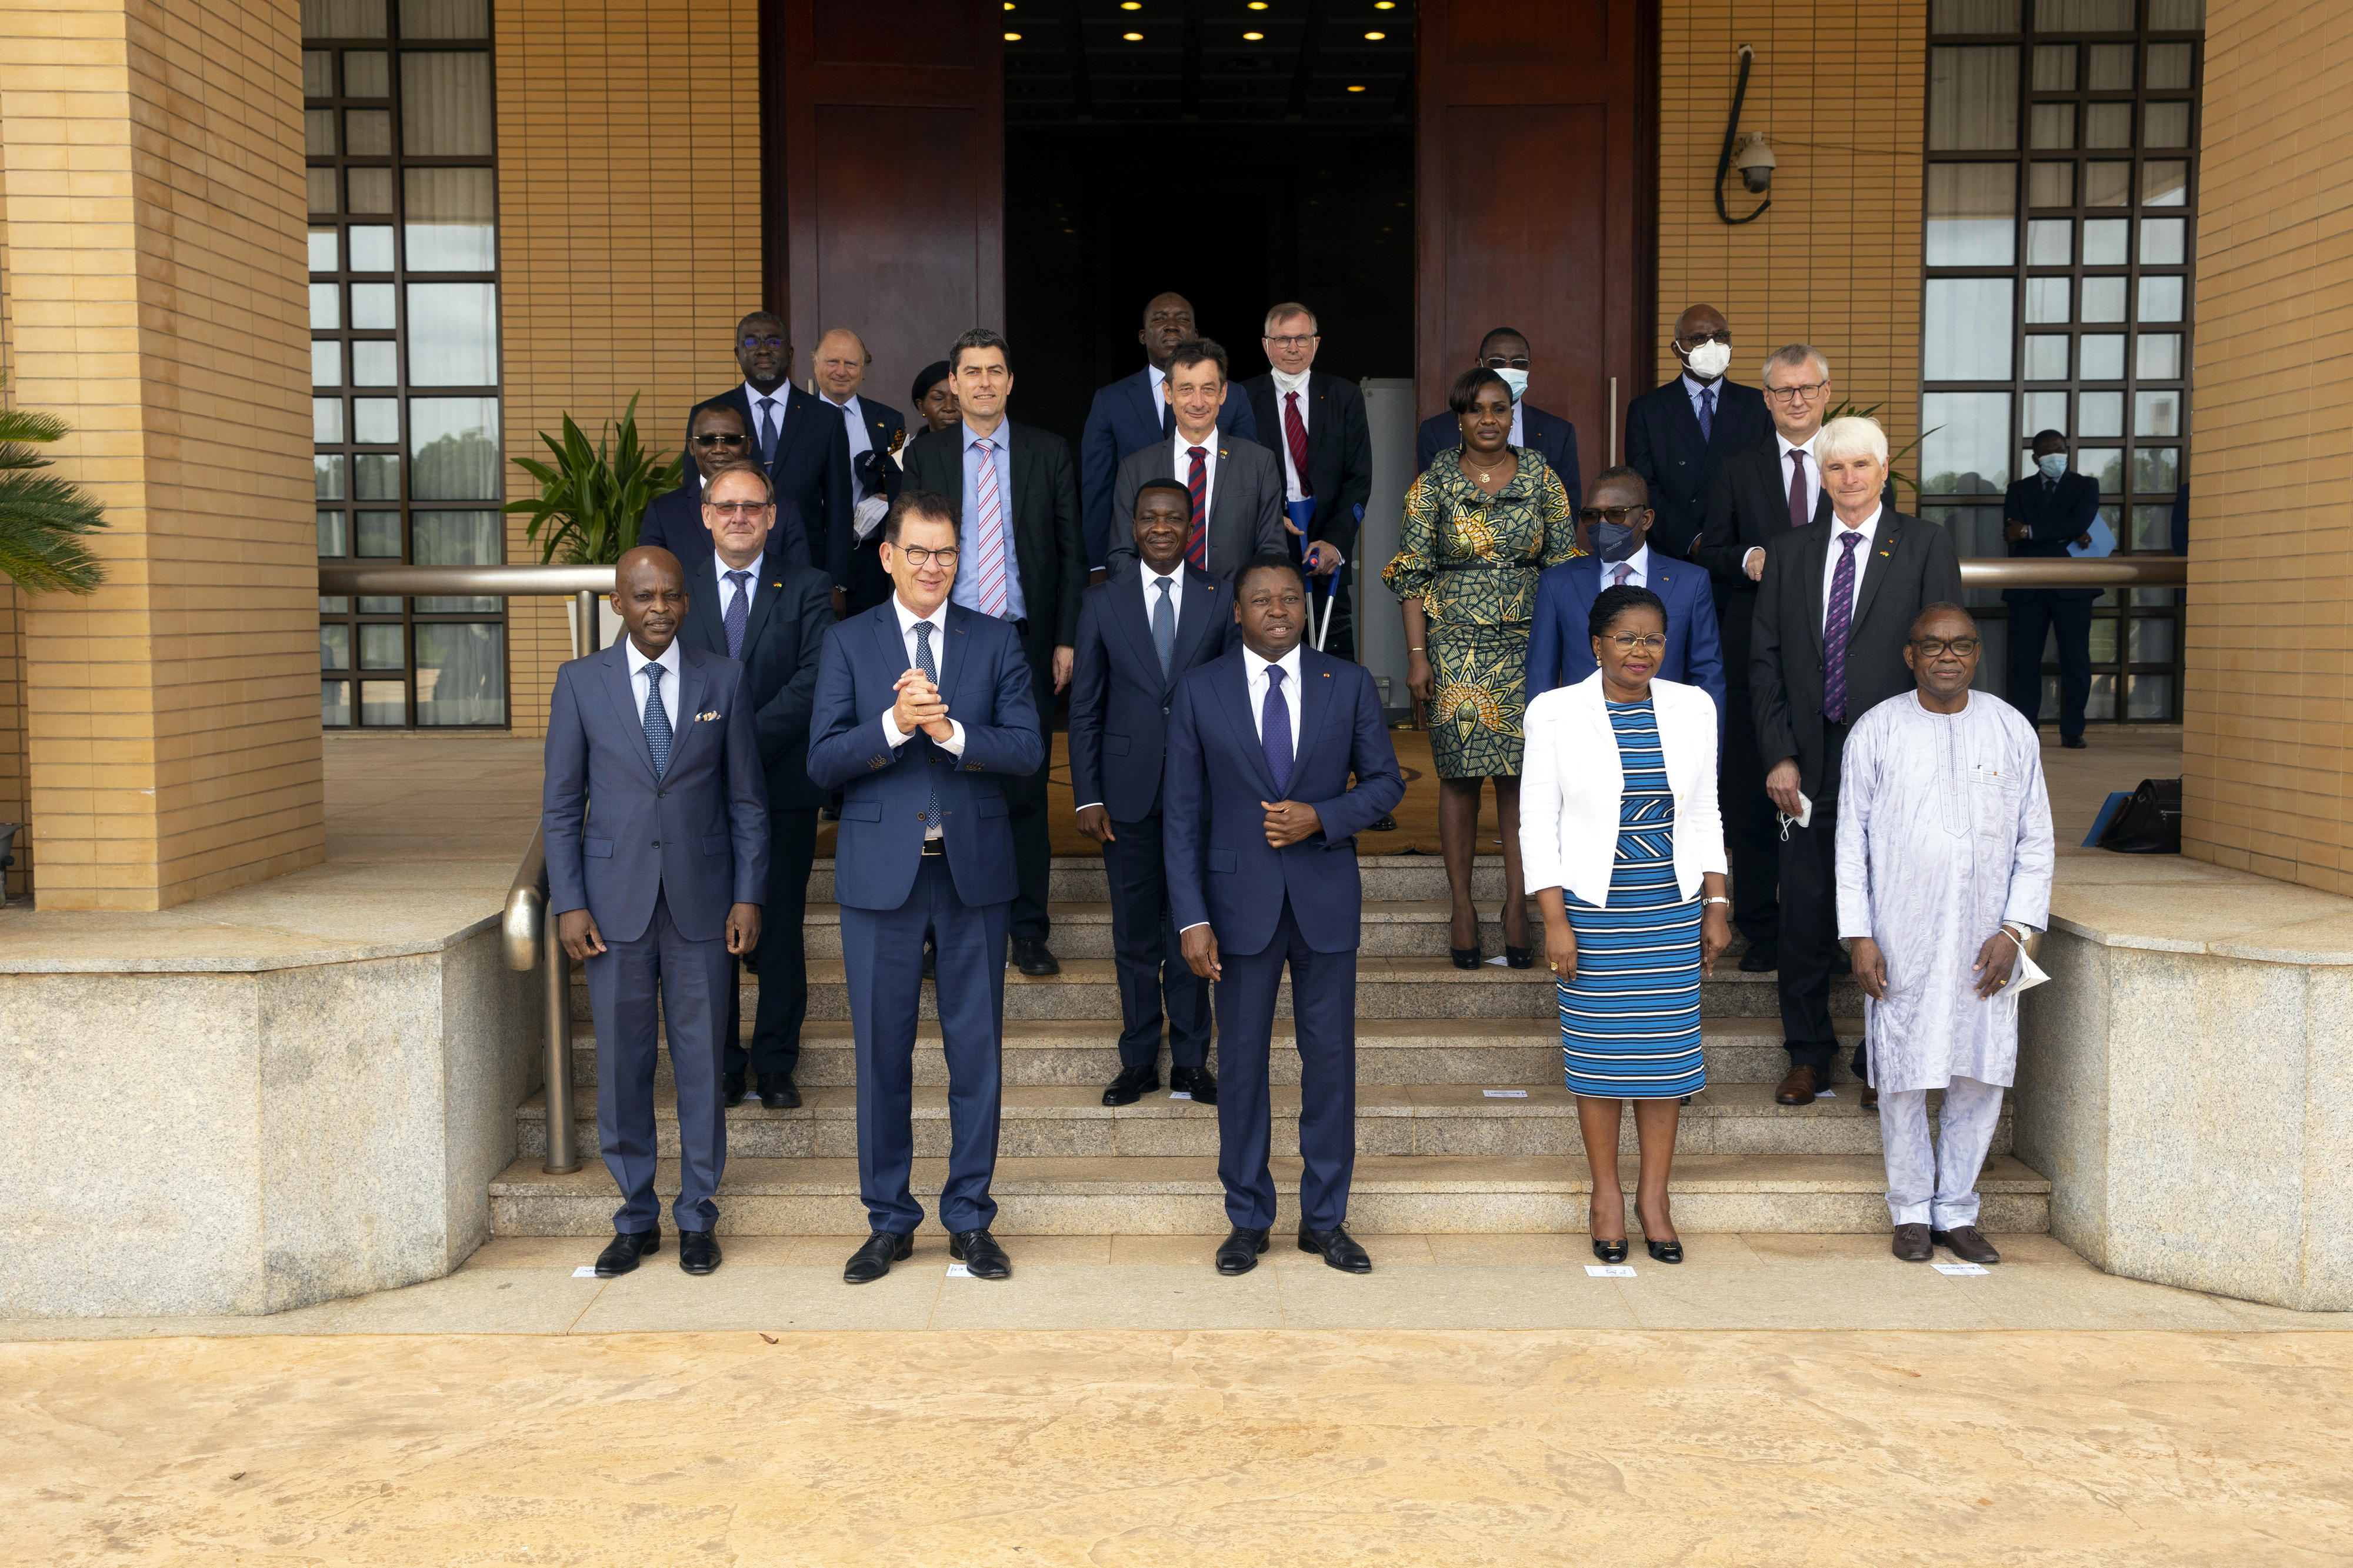 "Familienfoto" am 14. Juni 2021 in Lomé, Togo: Staatspräsident Faure Gnassingbé, Bundesentwicklungsminister Gerd Müller und die Delegationen von Togo und Deutschland